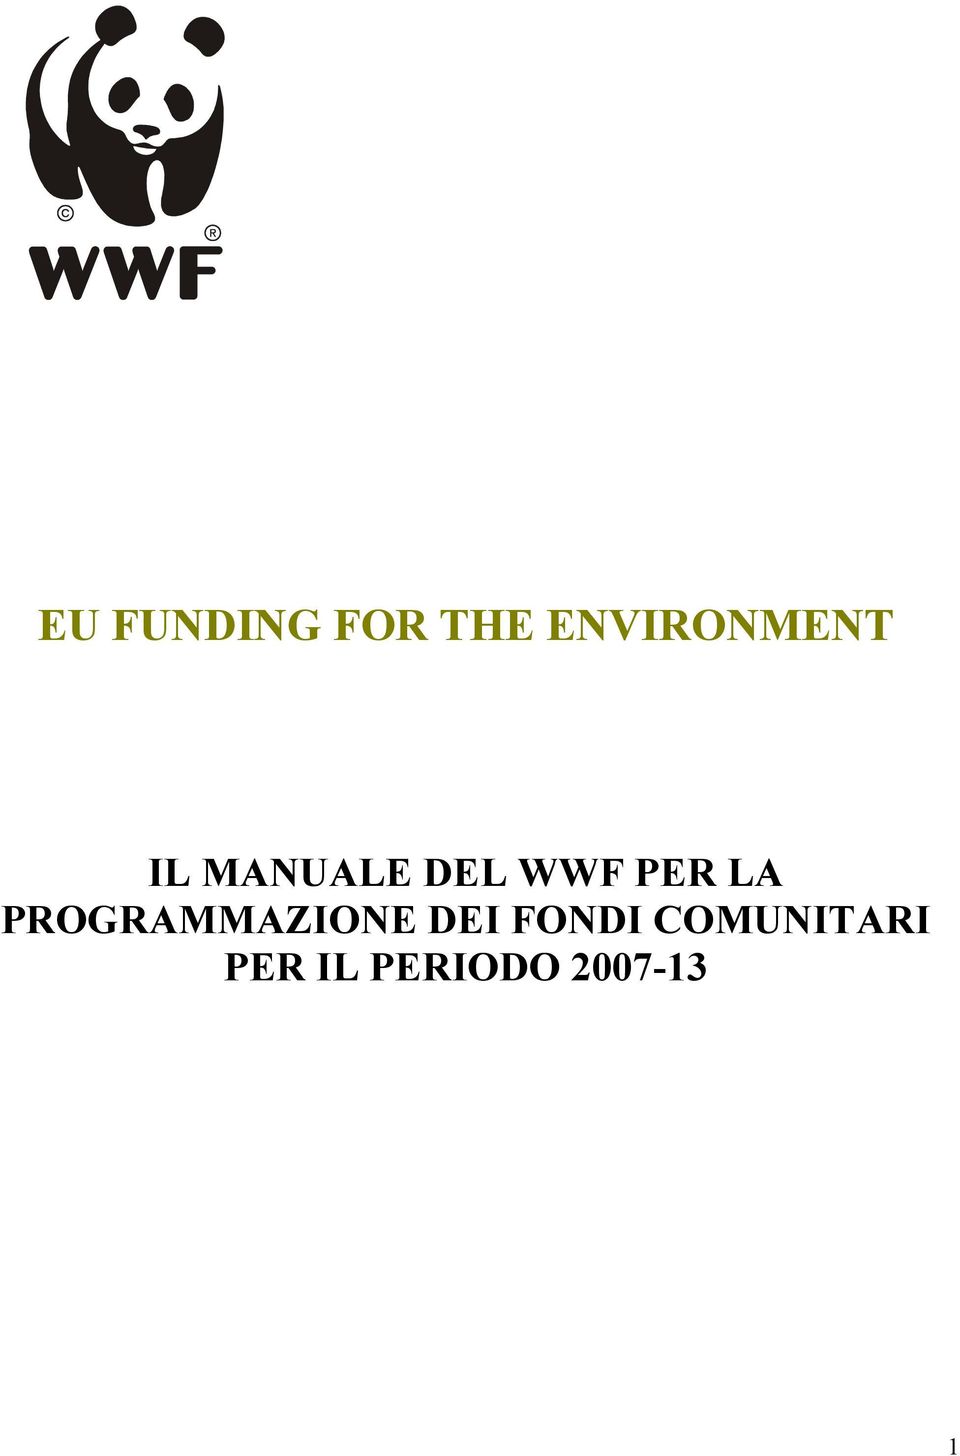 WWF PER LA PROGRAMMAZIONE DEI